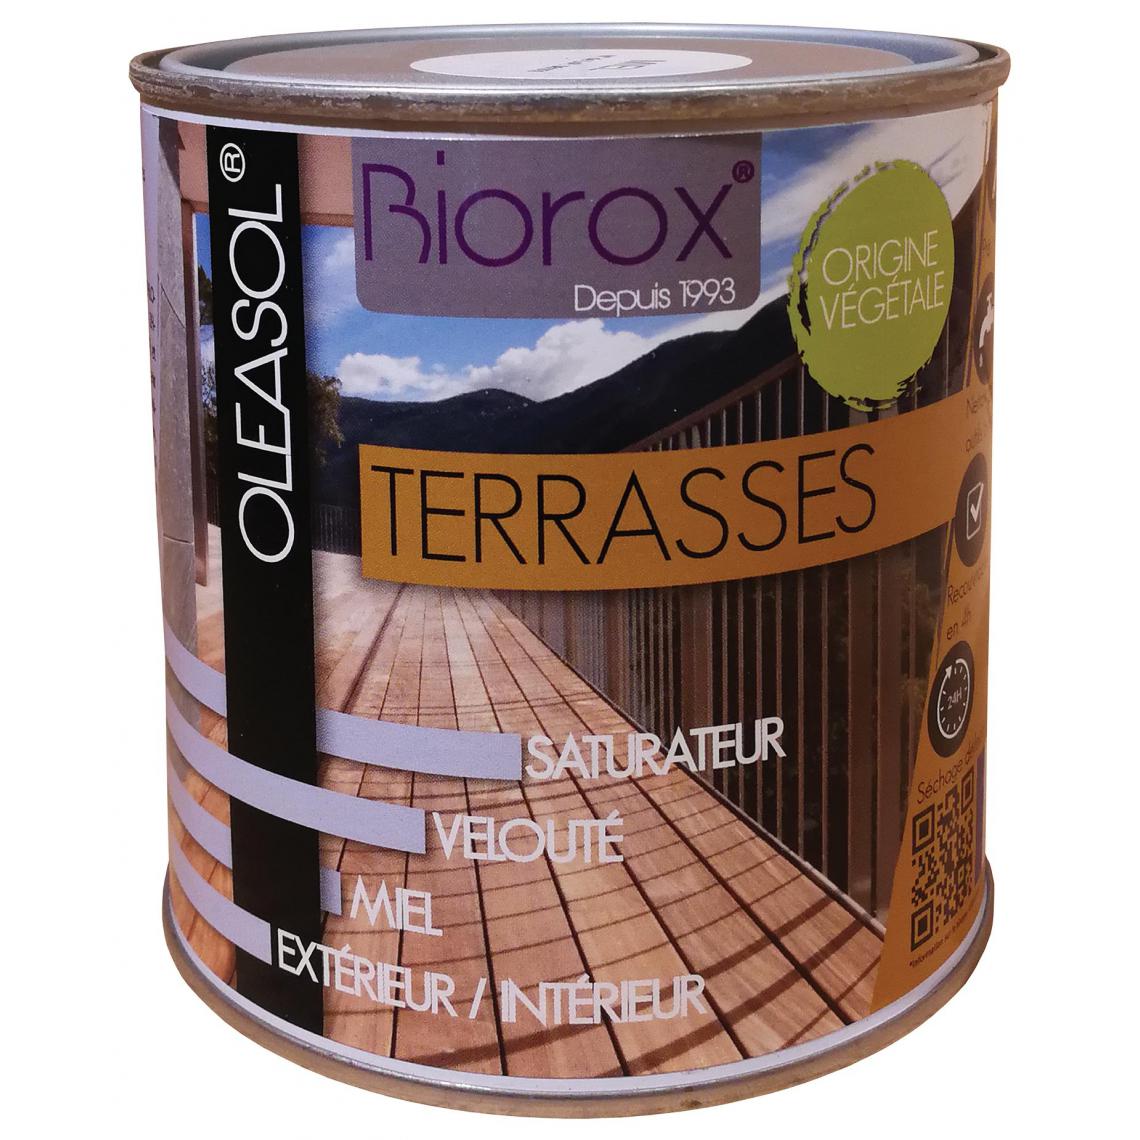 Biorox - Saturateur pour bois extérieurs origine végétale 2 en 1 terrasses Oleasol 1 litre - Peinture intérieure